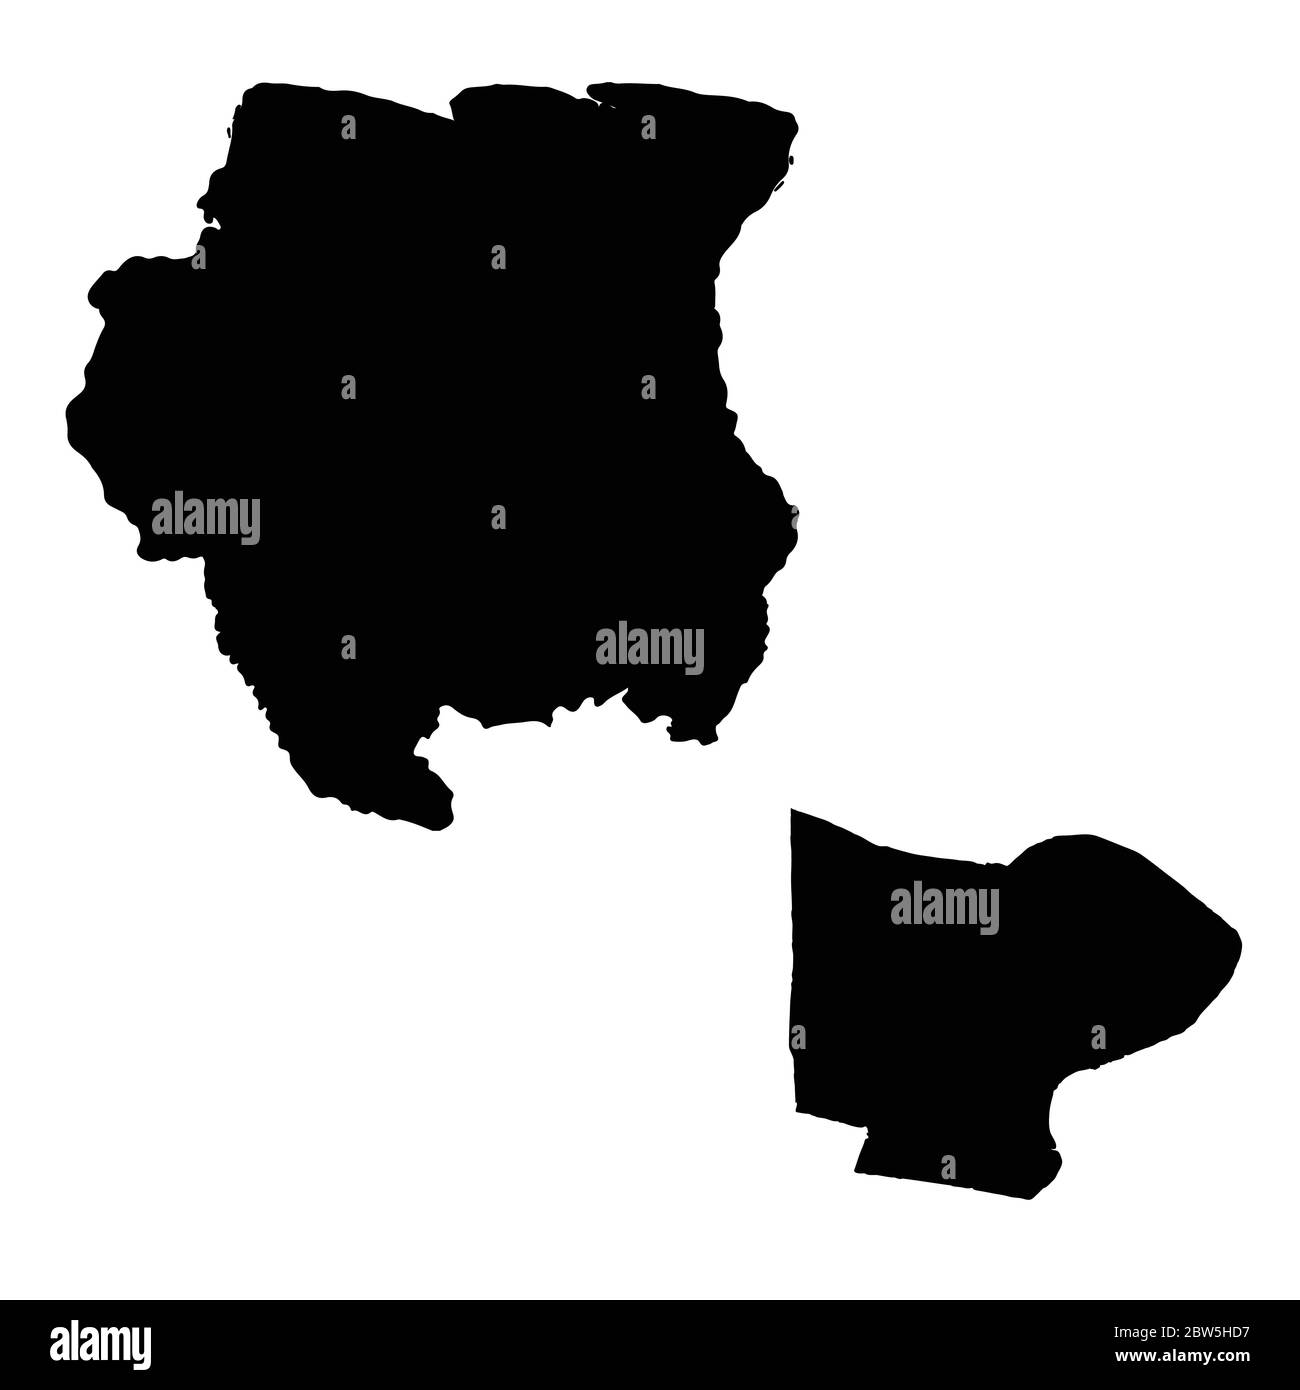 Vektorkarte Suriname und Paramaribo. Land und Hauptstadt. Isolierte Vektorgrafik. Schwarz auf weißem Hintergrund. EPS 10-Abbildung. Stock Vektor